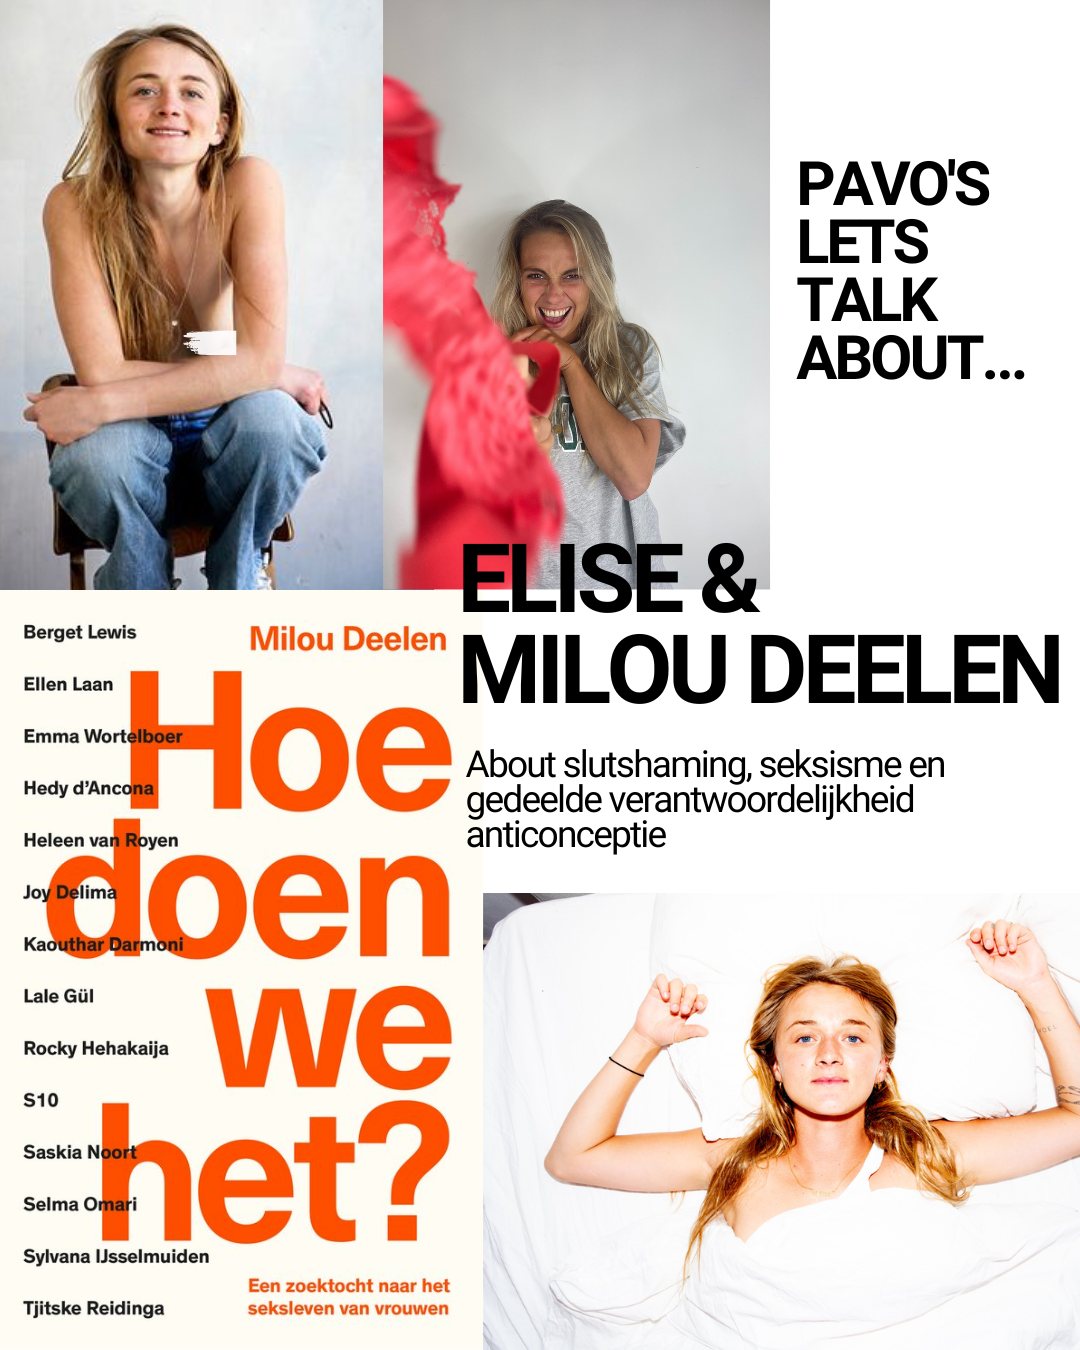 Let's talk about: Milou Deelen